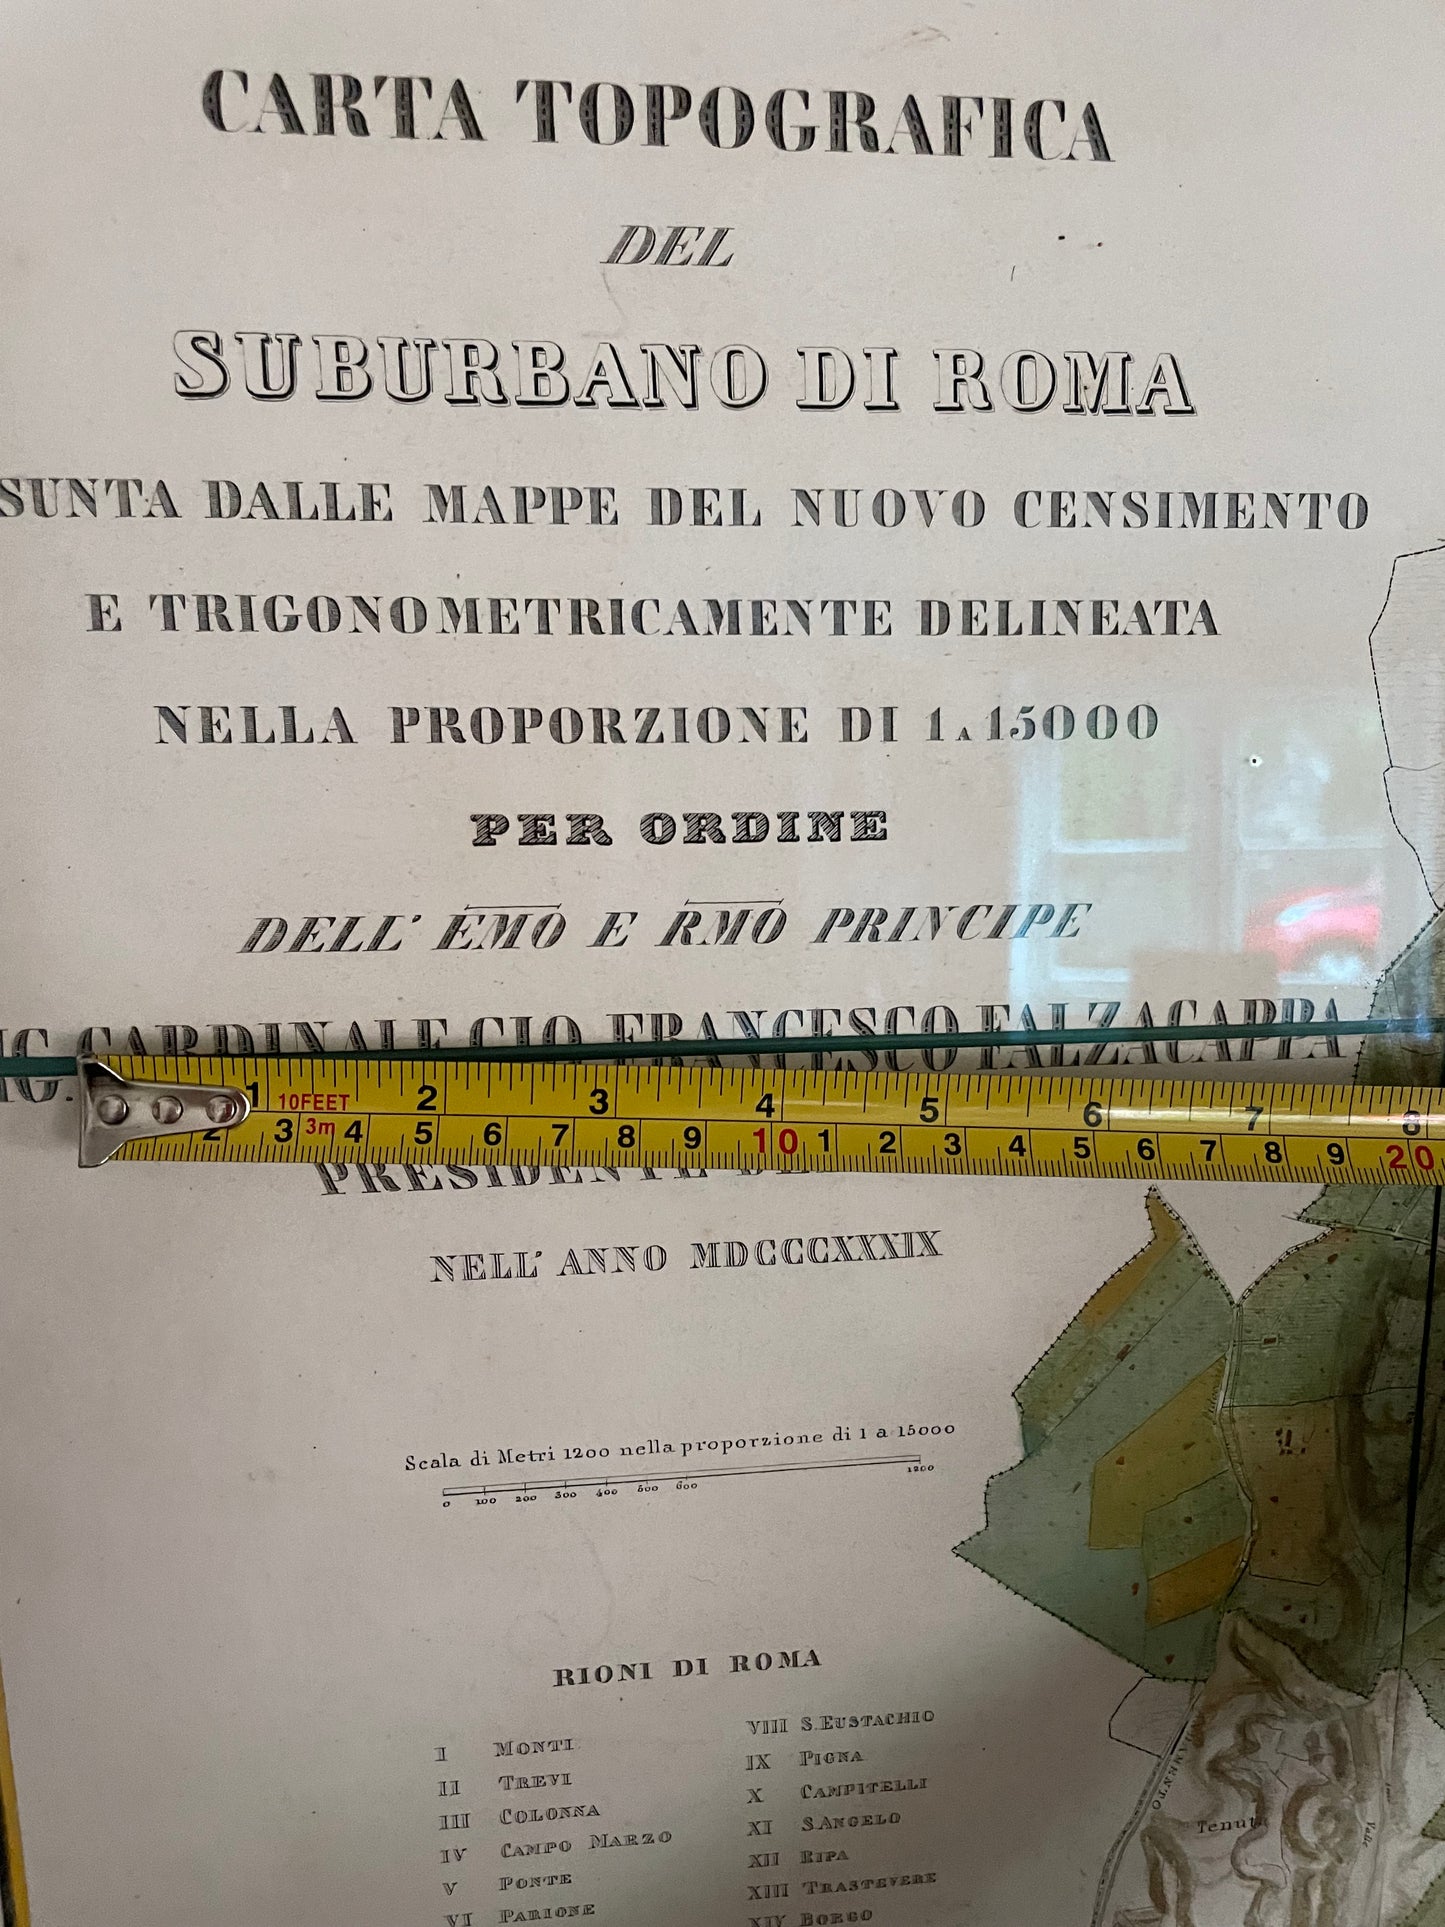 Mappa di Roma Carta Topografica del Suburbano di Romai, 1839 (Carta topografica di Roma e dei suoi dintorni nel 1839)